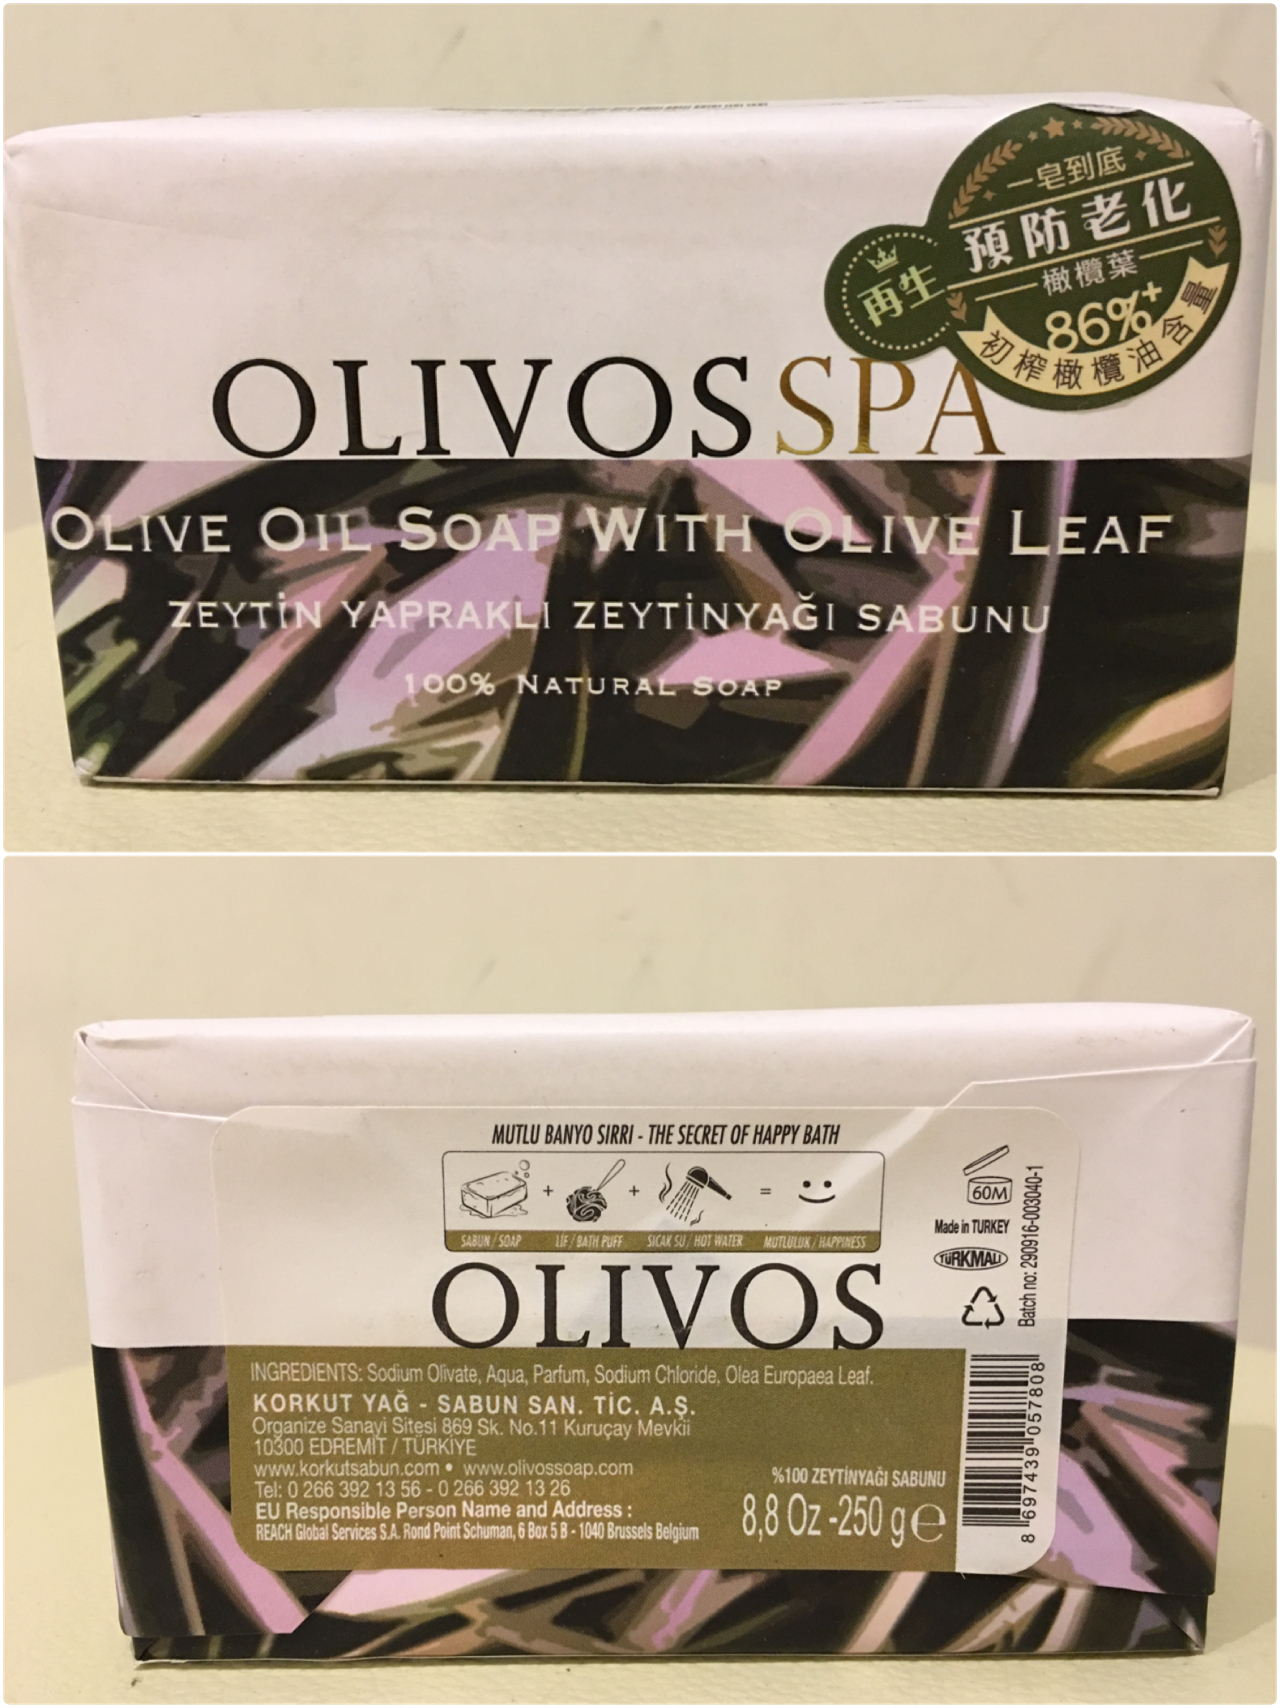 受保護的內容: 在家就能享受的頂級奢華~土耳其OLIVOS奧莉芙橄欖皂